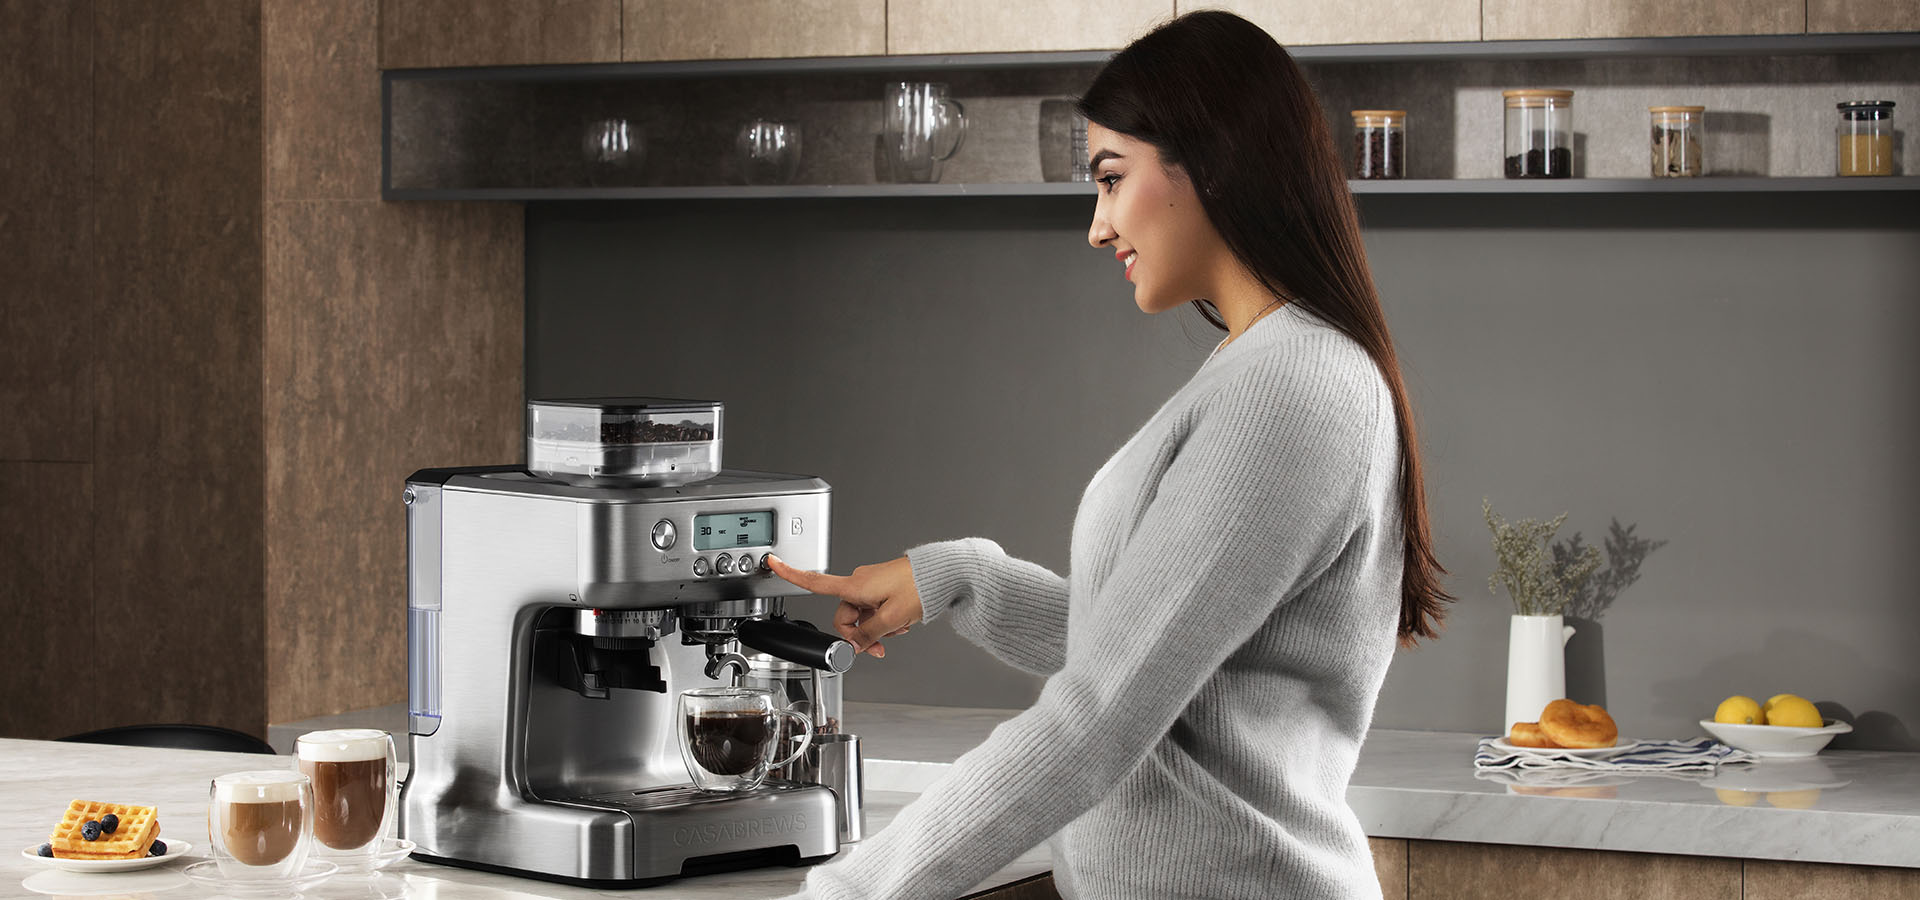 All-in-One Espresso Machine